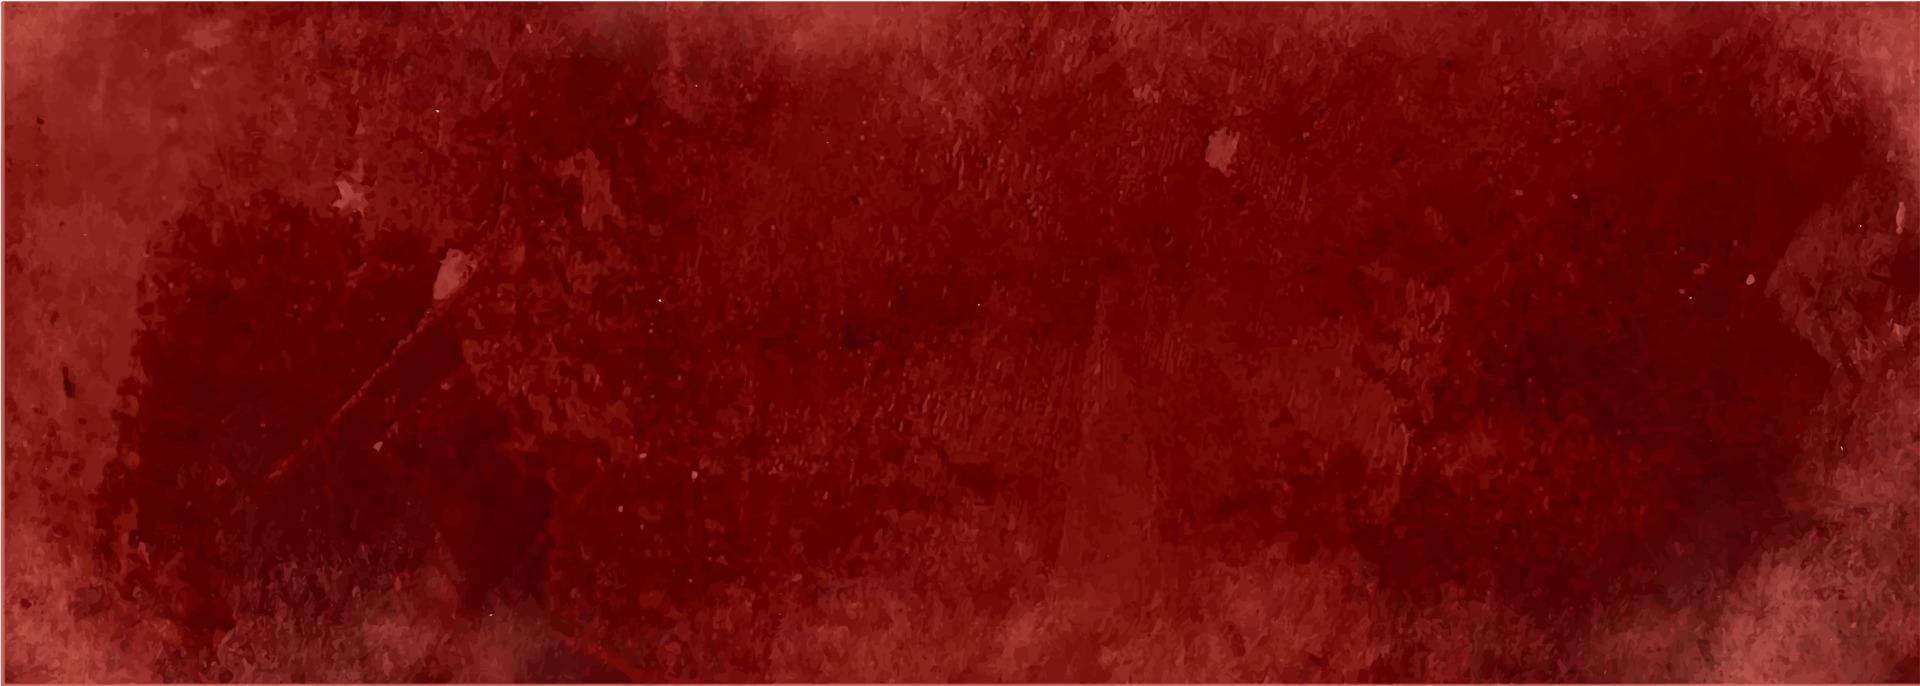 sfondo astratto rosso grunge texture vettore